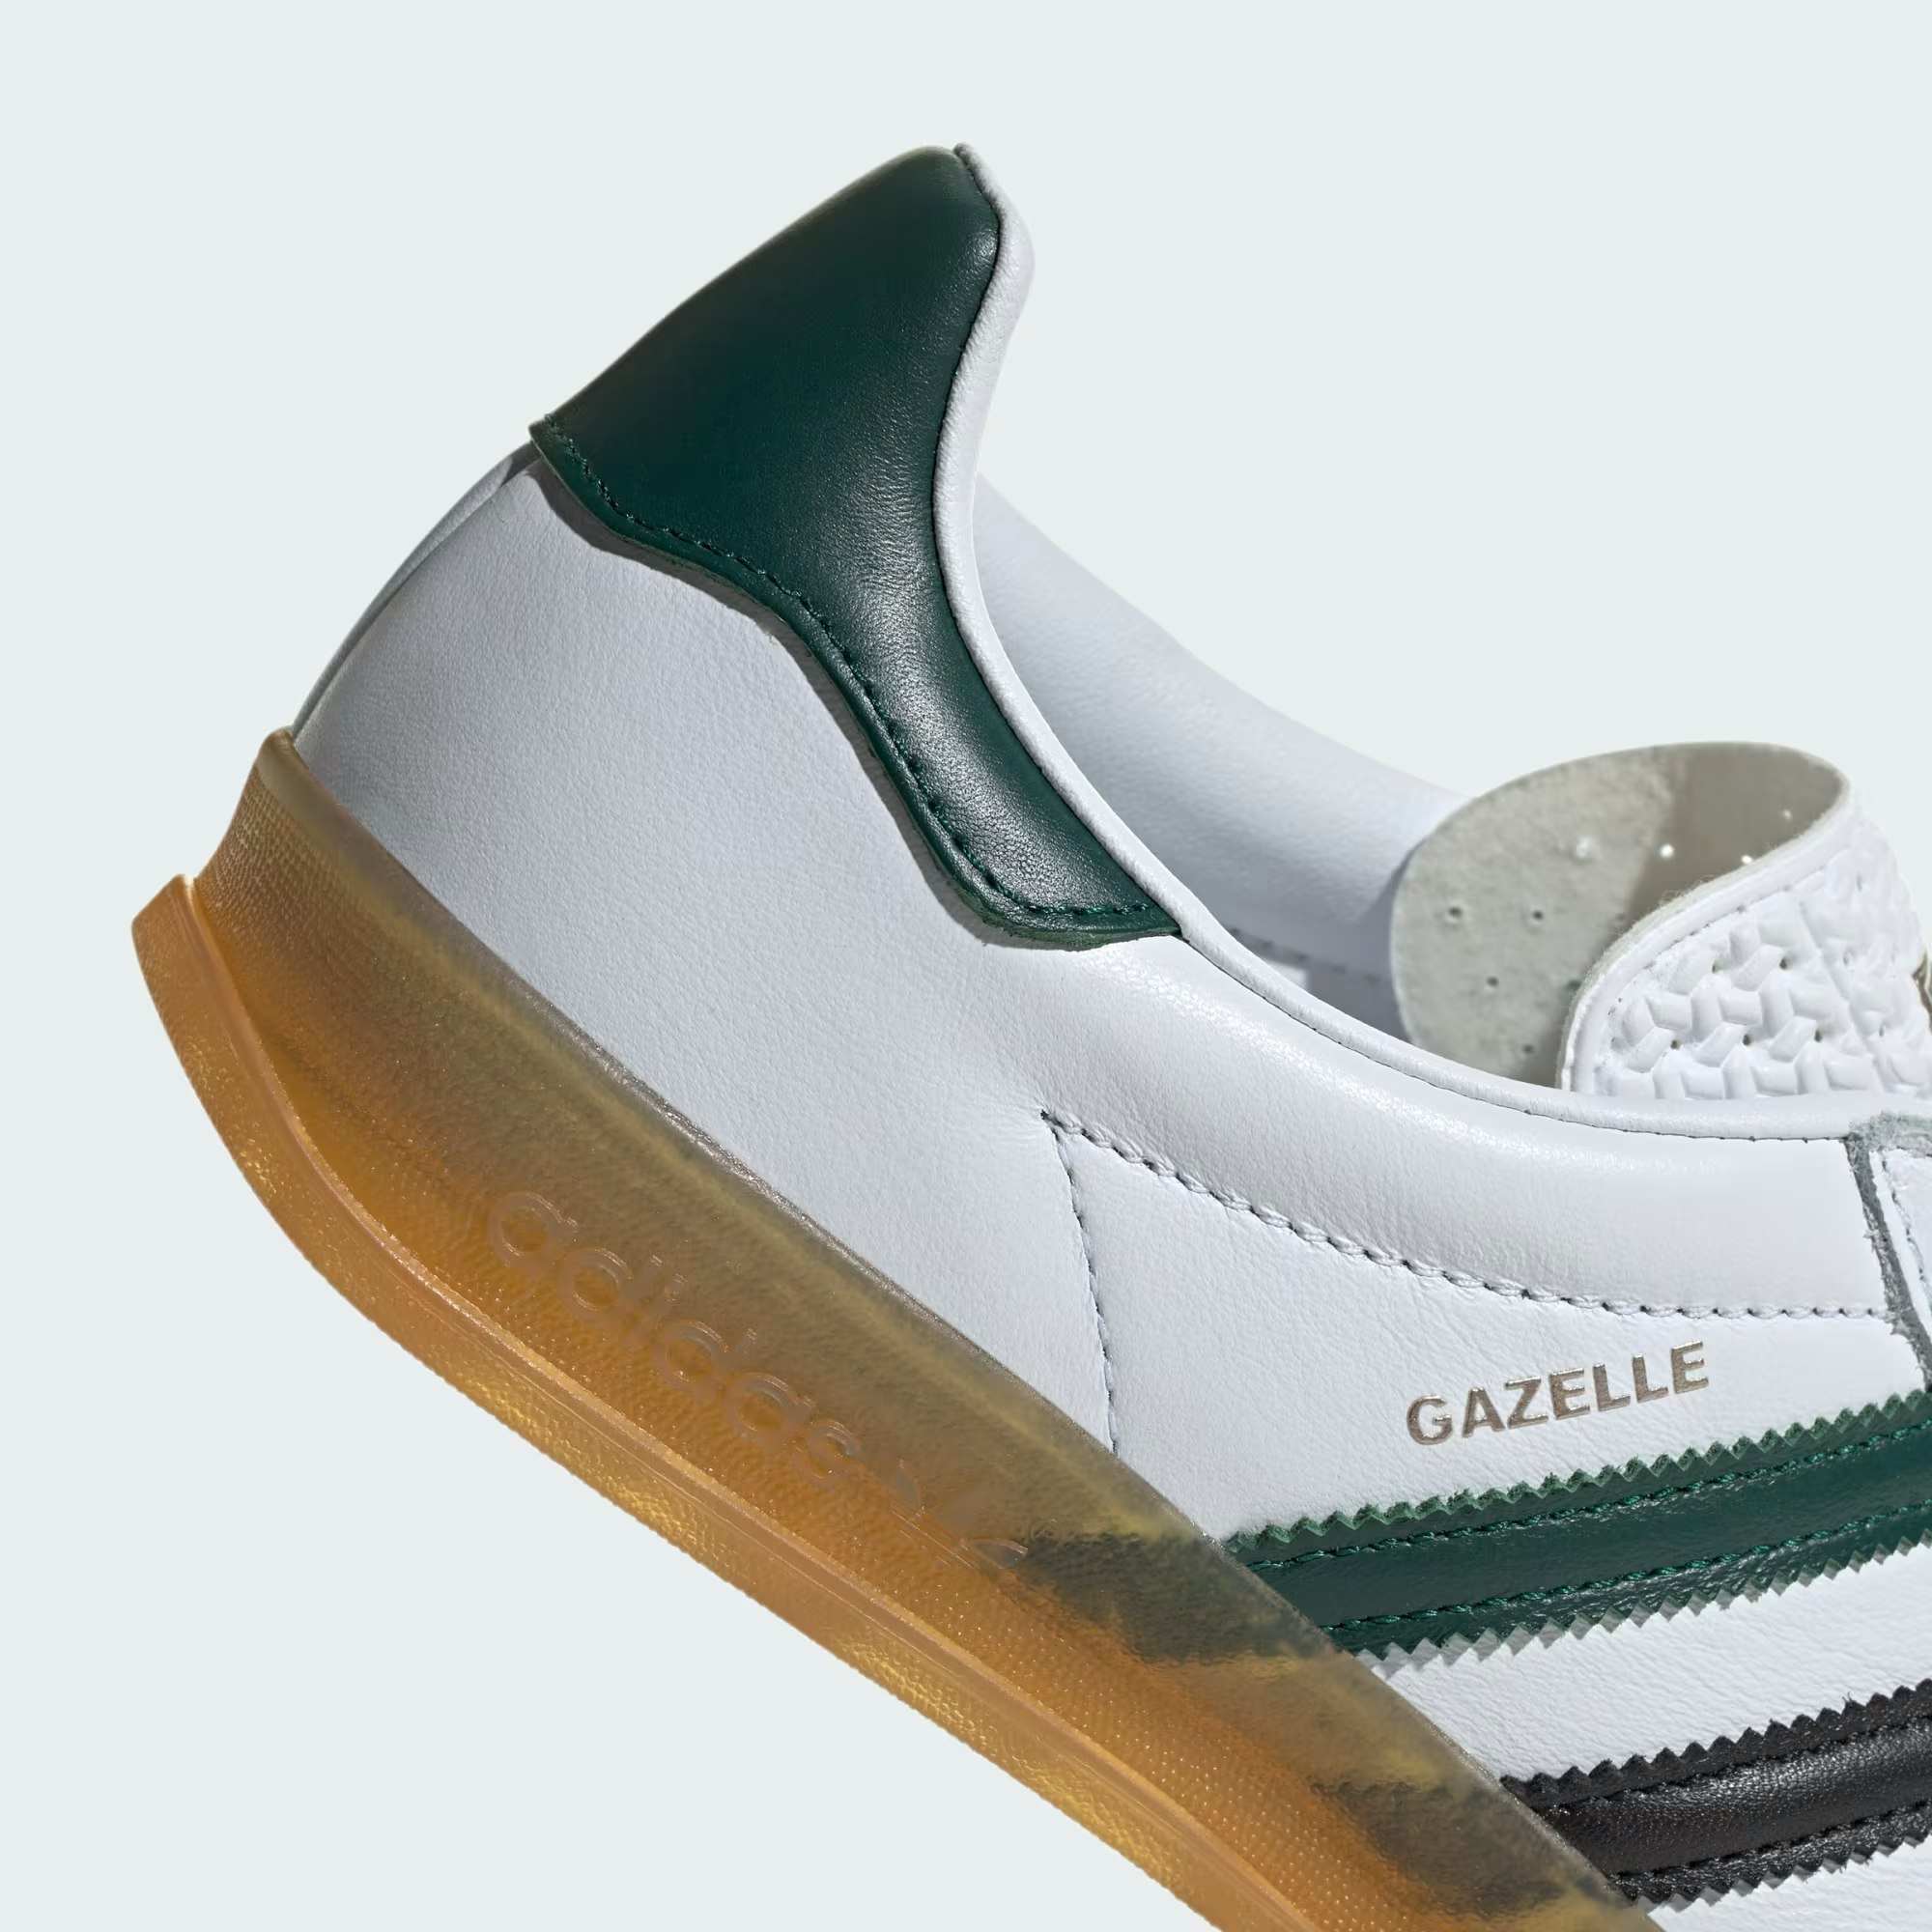 adidas Gazelle "White Collegiate Green"